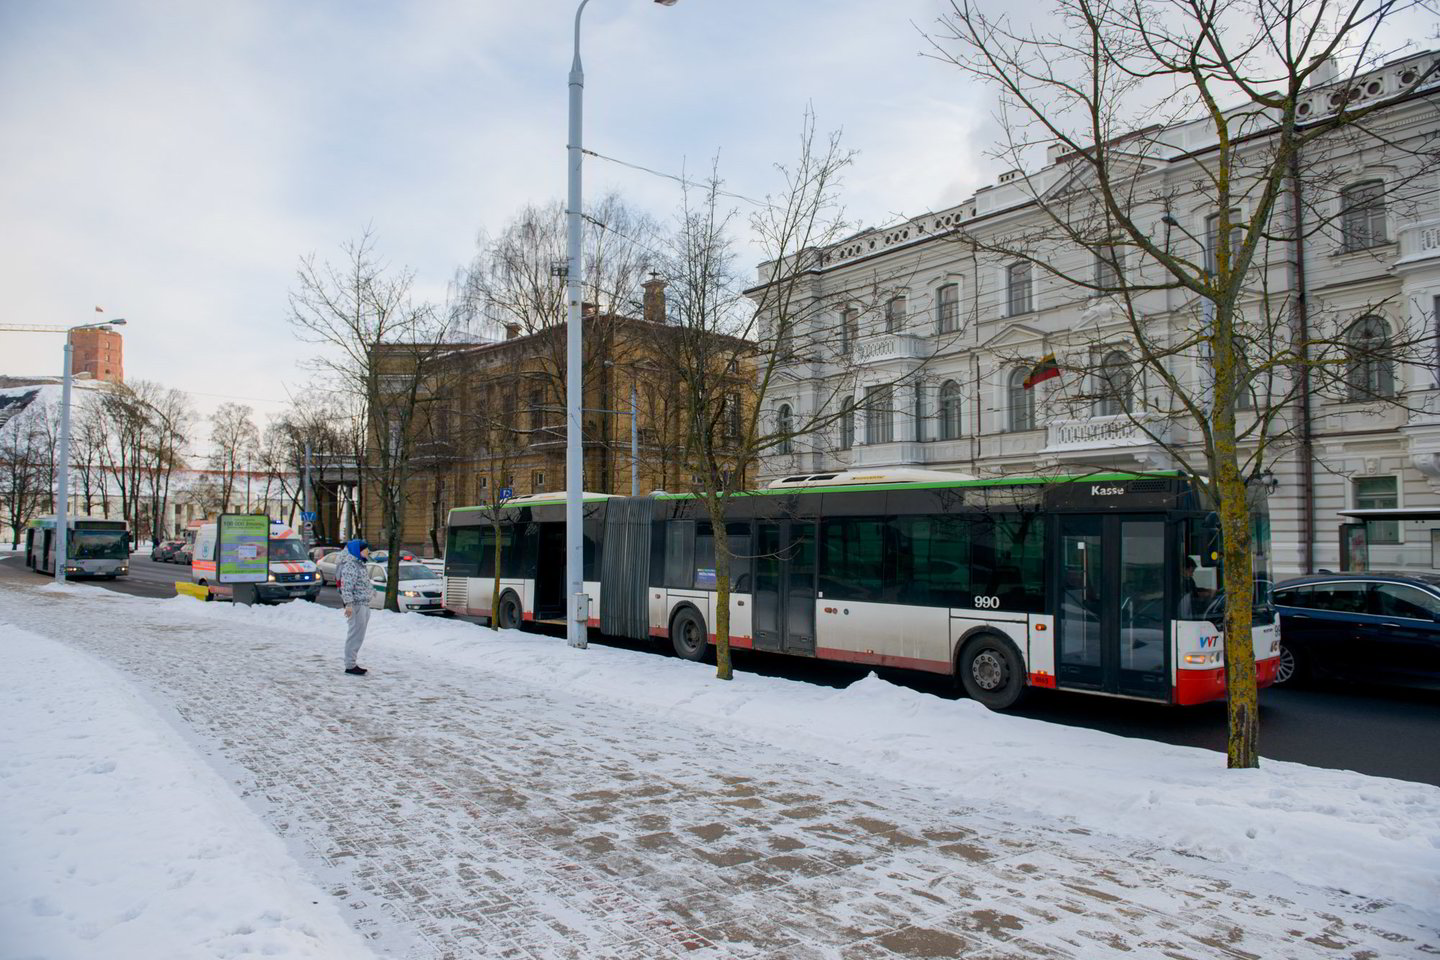  Vilniaus policijai neaišku, kaip iš autobuso iškrito keleivis, pareigūnai prašo jūsų pagalbos.<br> J.Stacevičiaus nuotr.